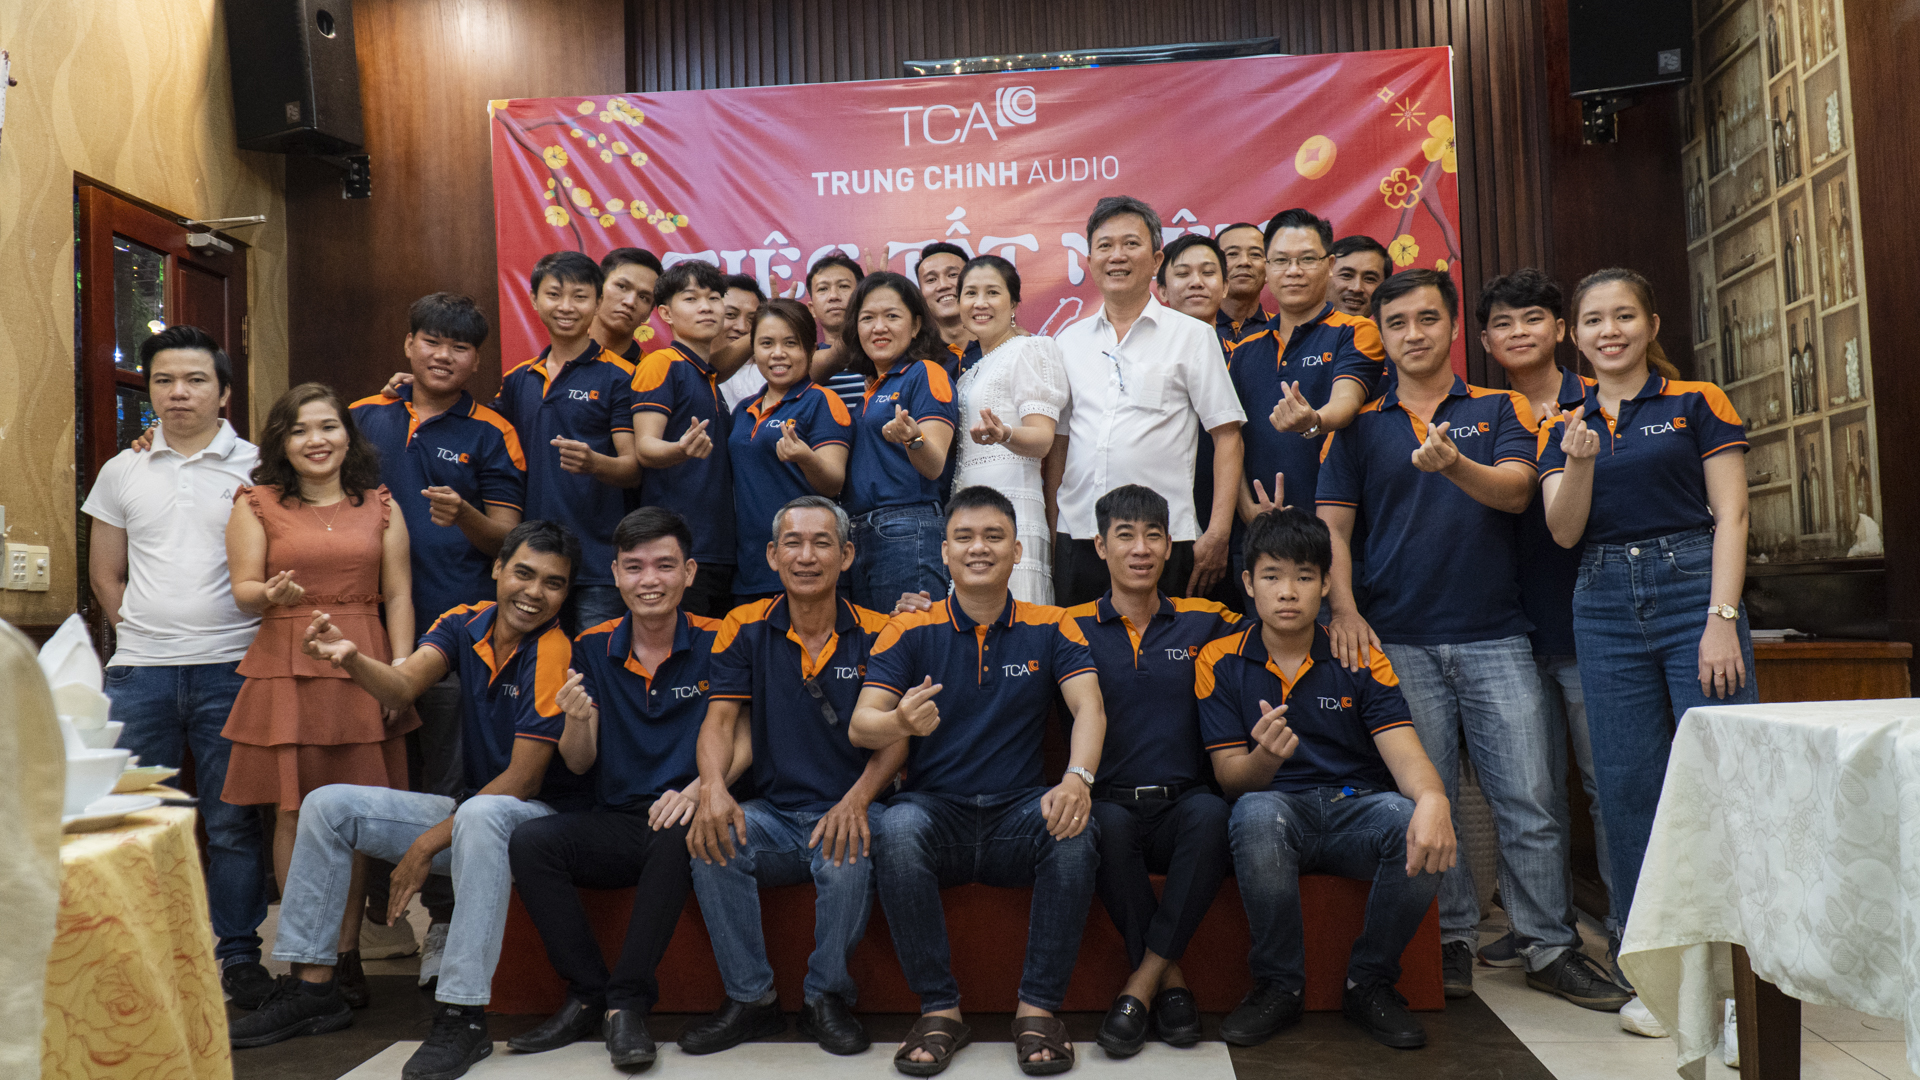 Tiệc tất niên 2020, chào xuân Tân Sửu tại TCA - Trung Chính Audio chi nhánh Sài Gòn